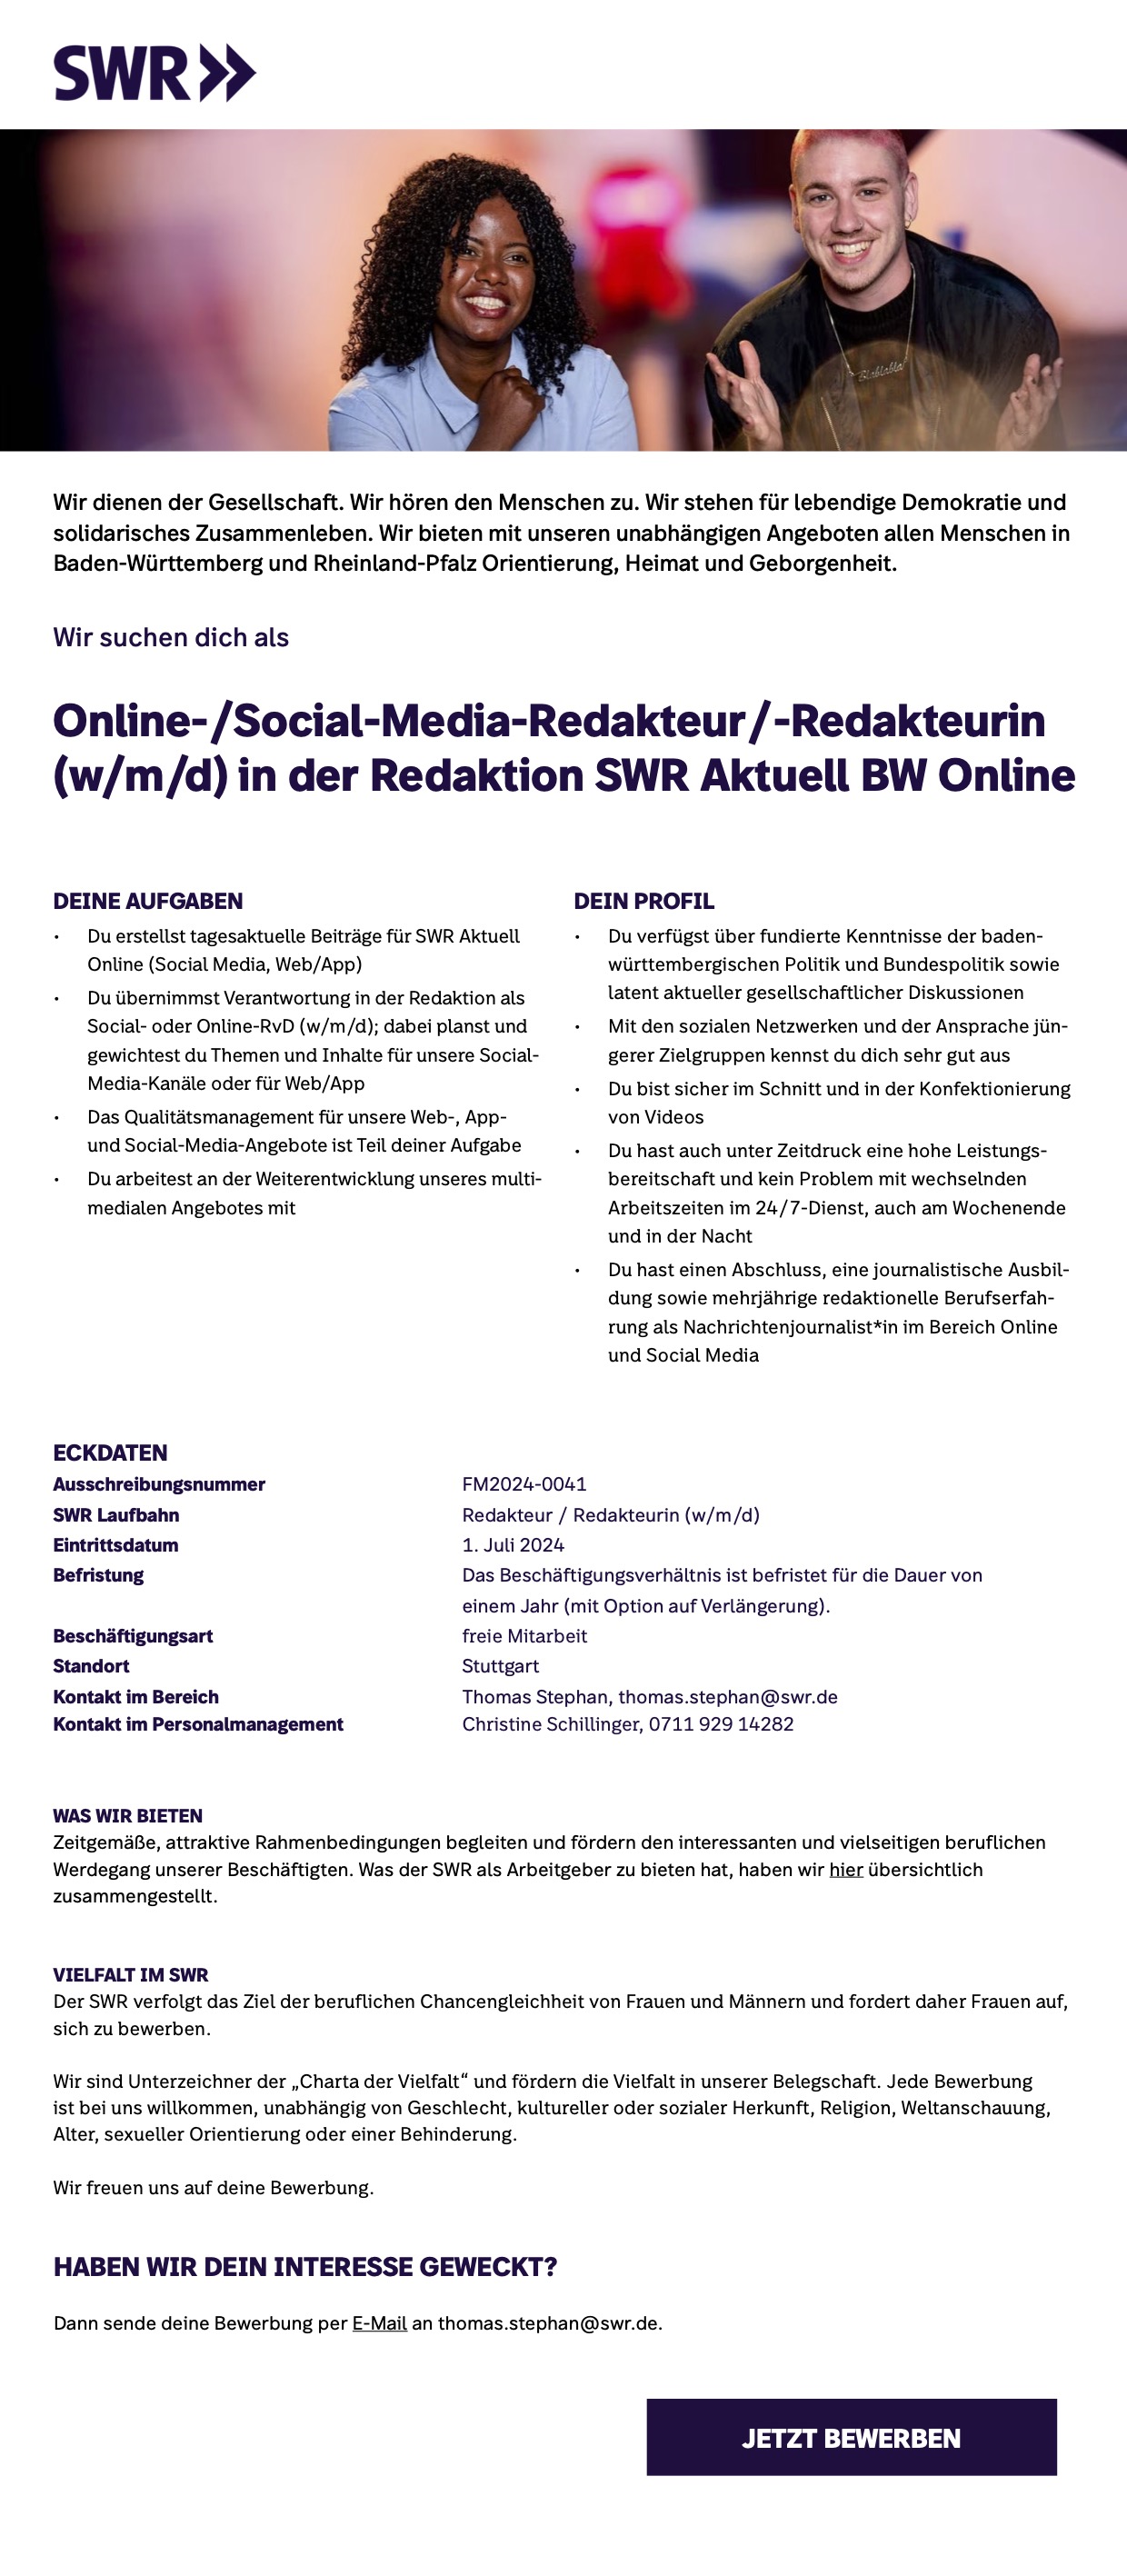 Online-/ Social-Media-Redakteur /-Redakteurin (w/m/d) Redaktion SWR Aktuell BW Online